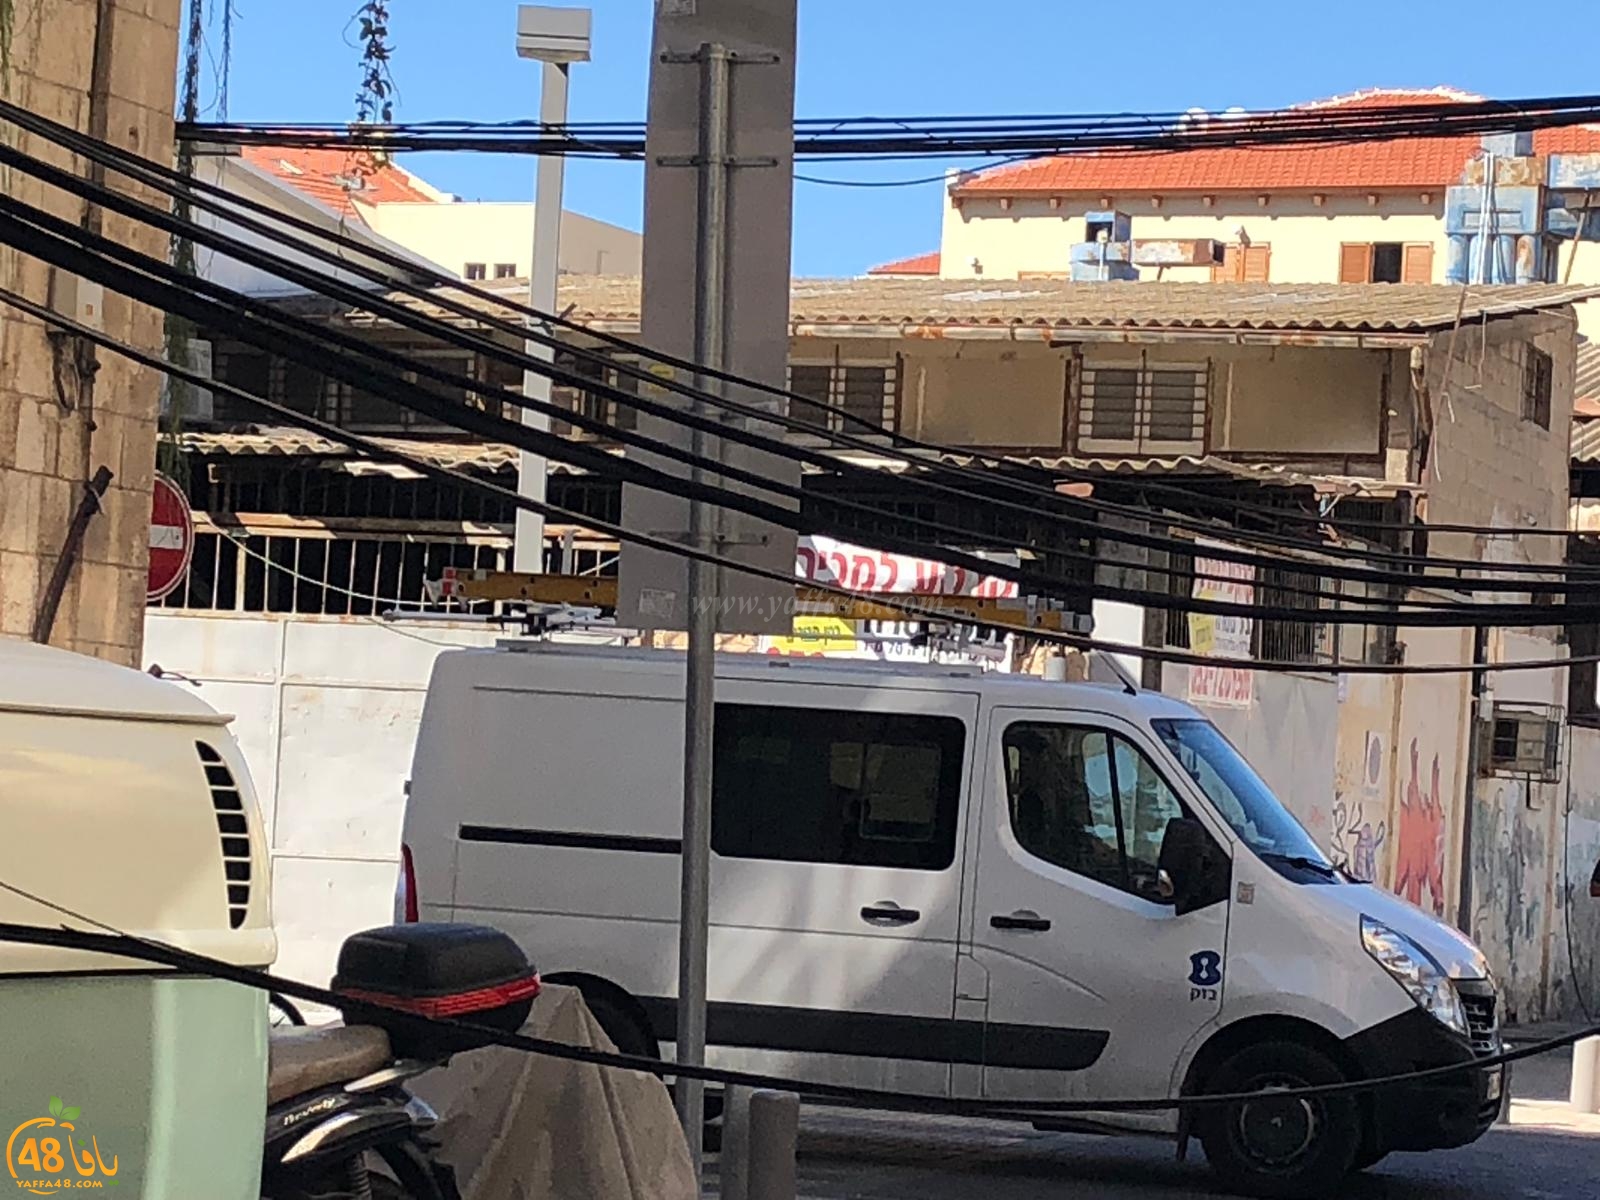  بالصور: شاحنة تتسبب بقطع أسلاك الاتصالات في حي النزهة بيافا